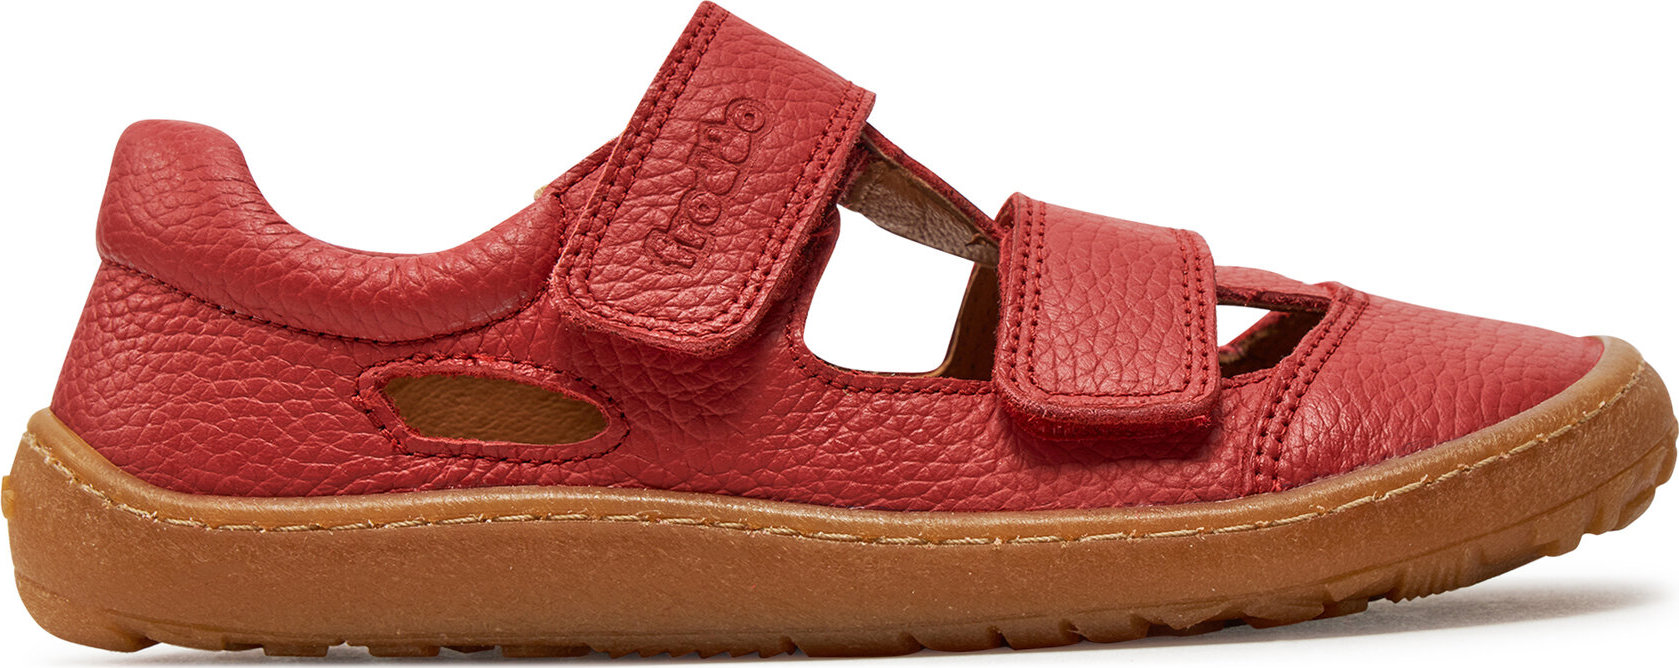 Sandály Froddo Barefoot Sandal G3150266-5 D Red